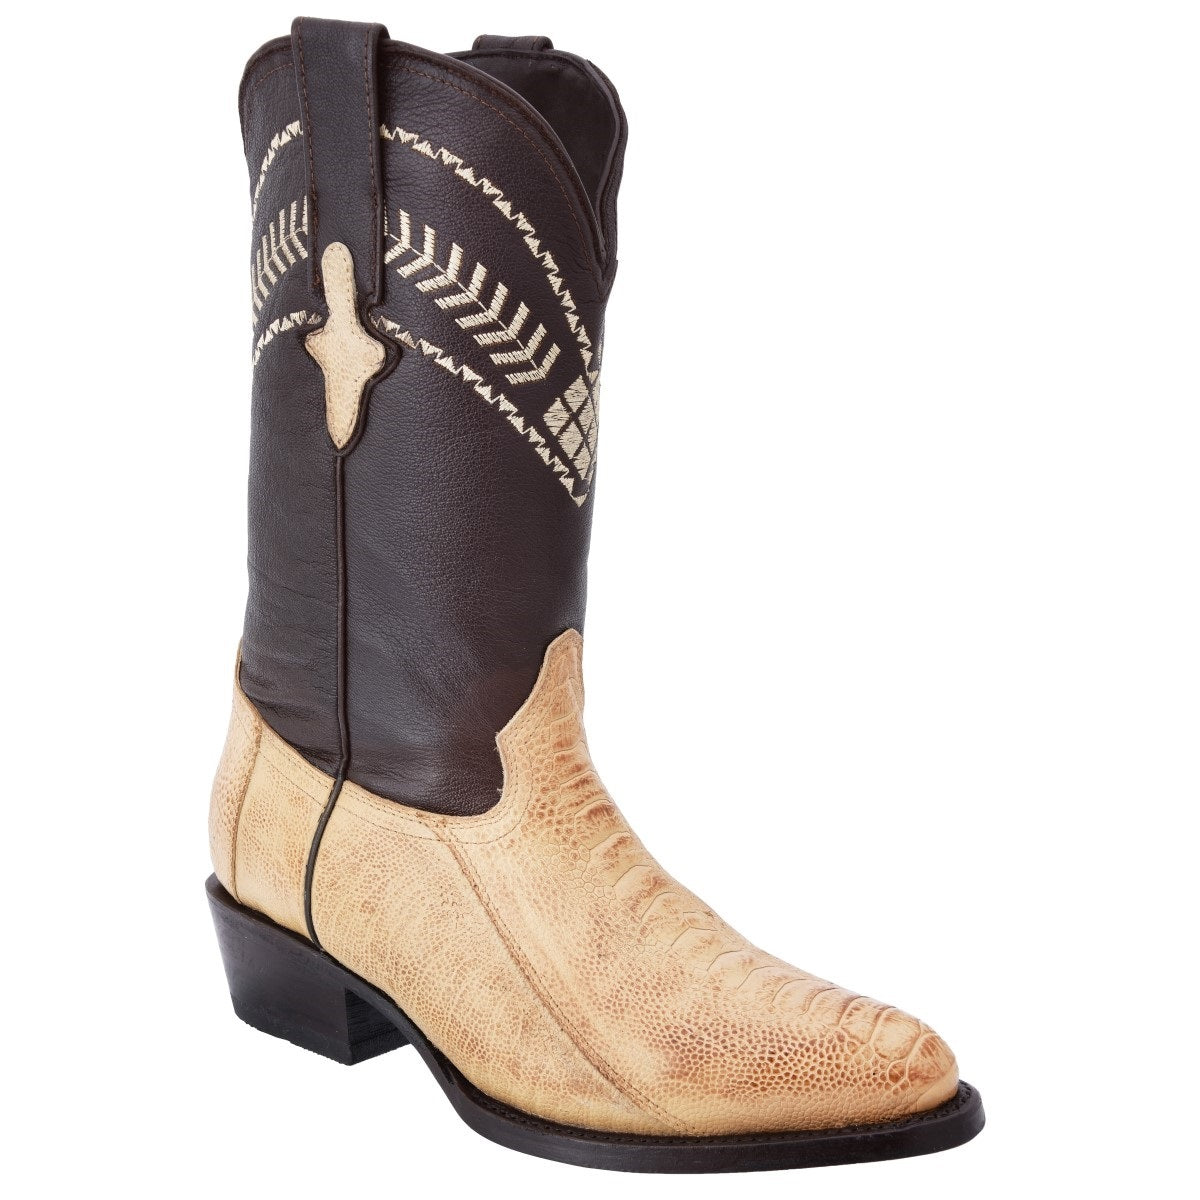 Botas Vaqueras TM-WD0241 - Western Boots